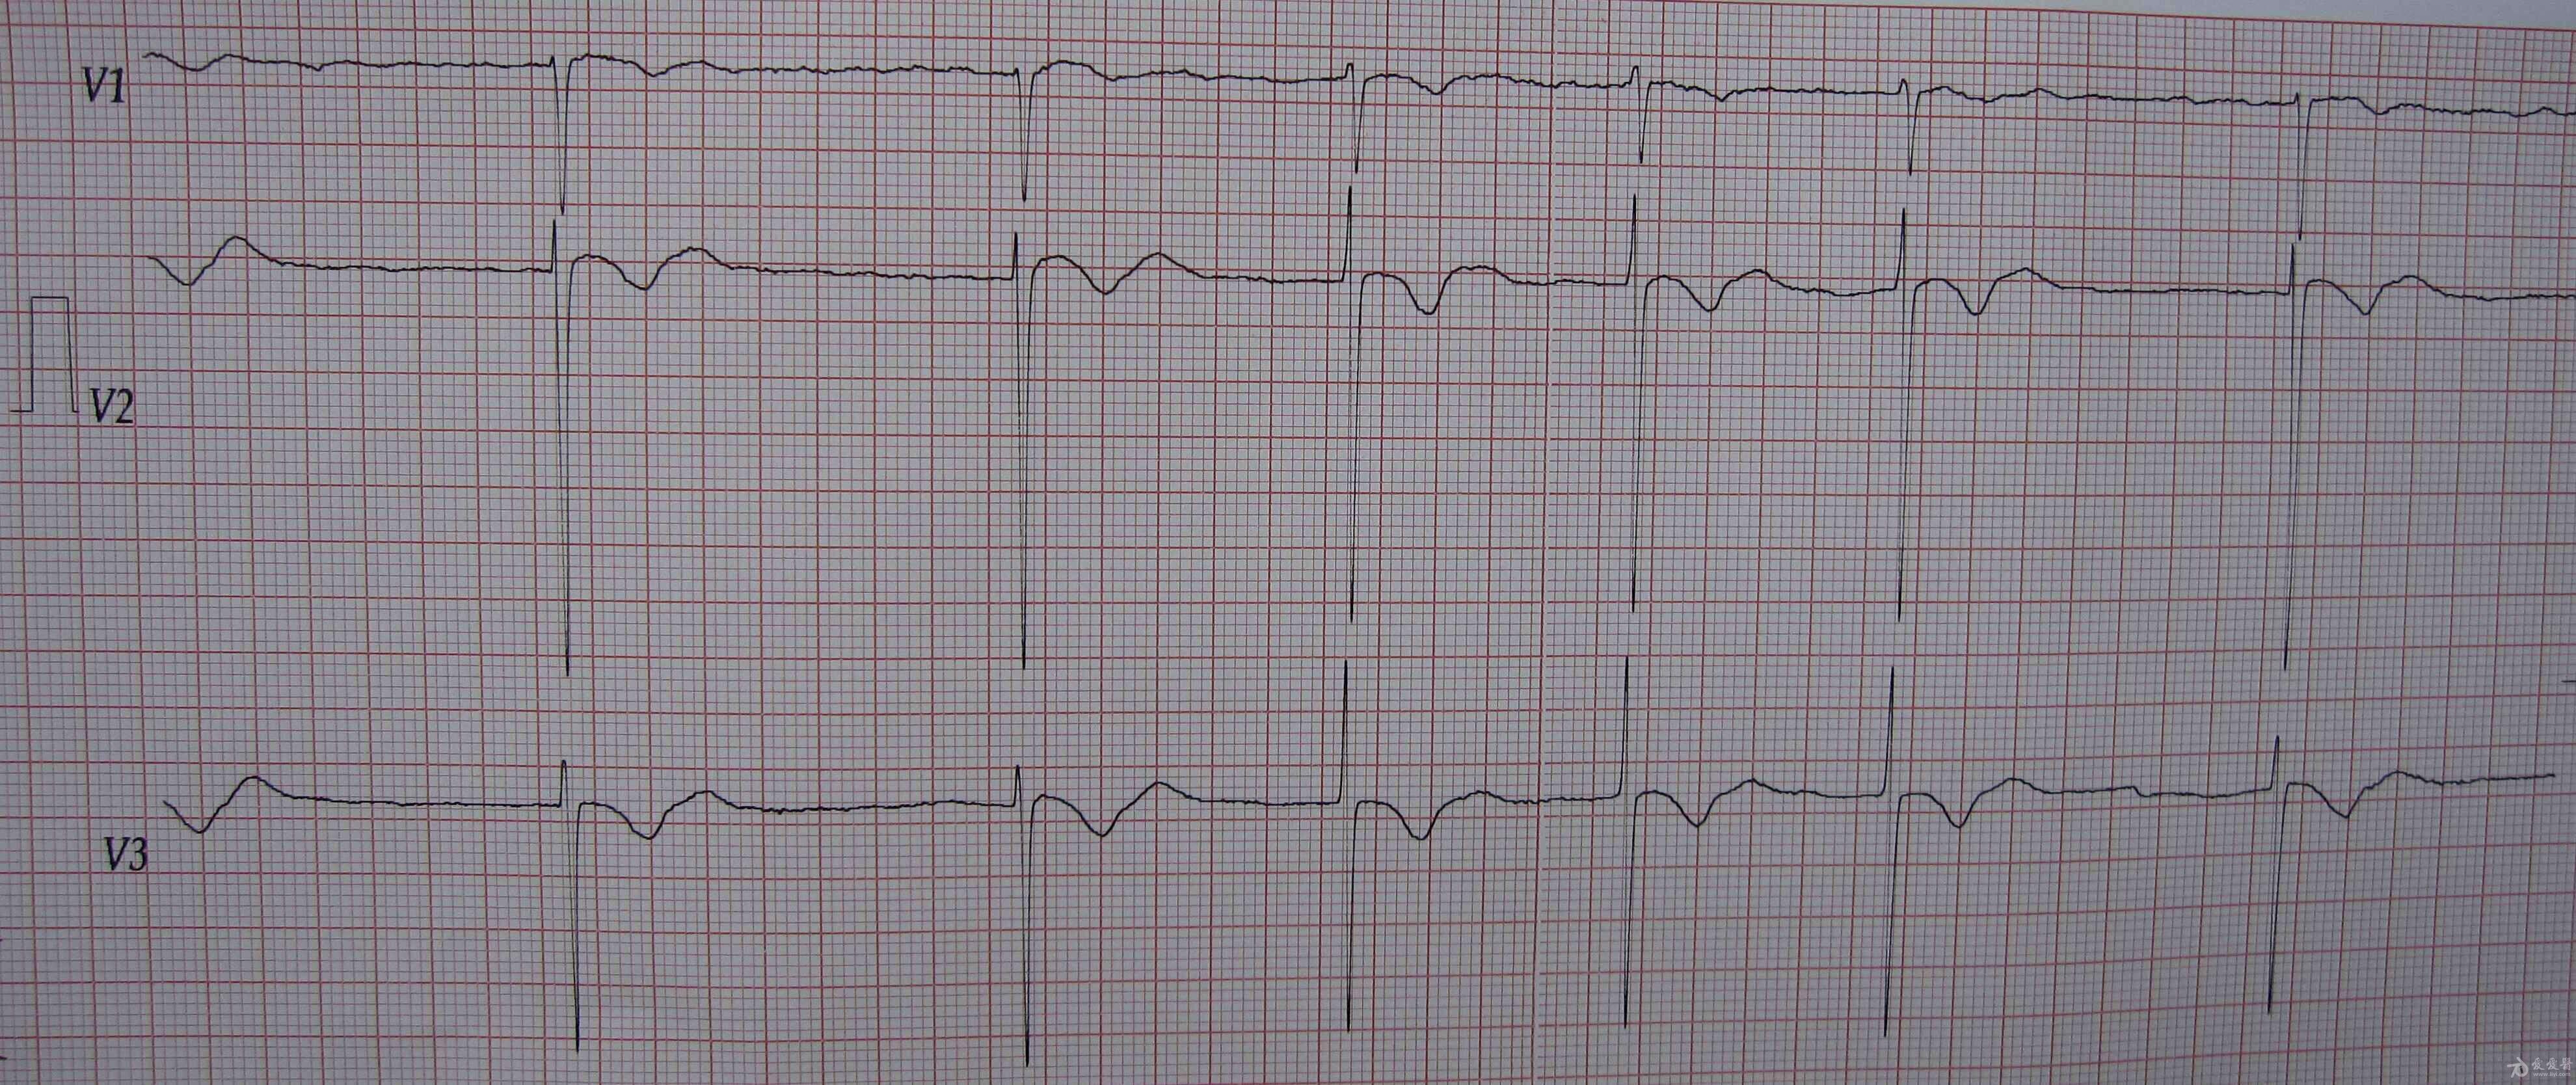 一例服地高辛1天1片(约4周)的病人心电图